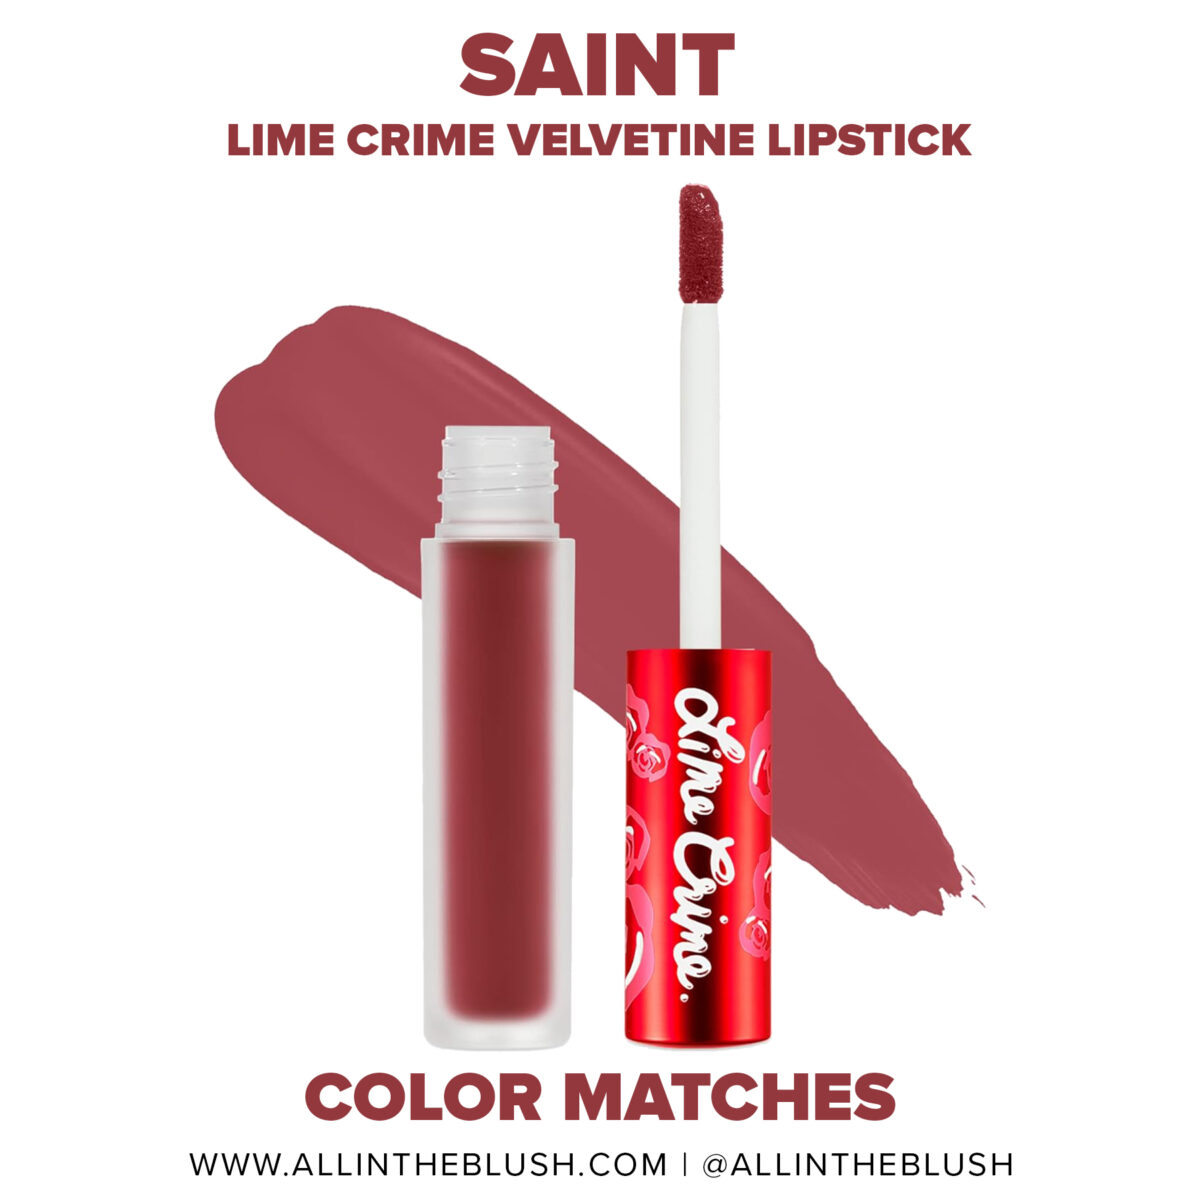 Lime Crime Saint Velvetine Lipstick Dupes